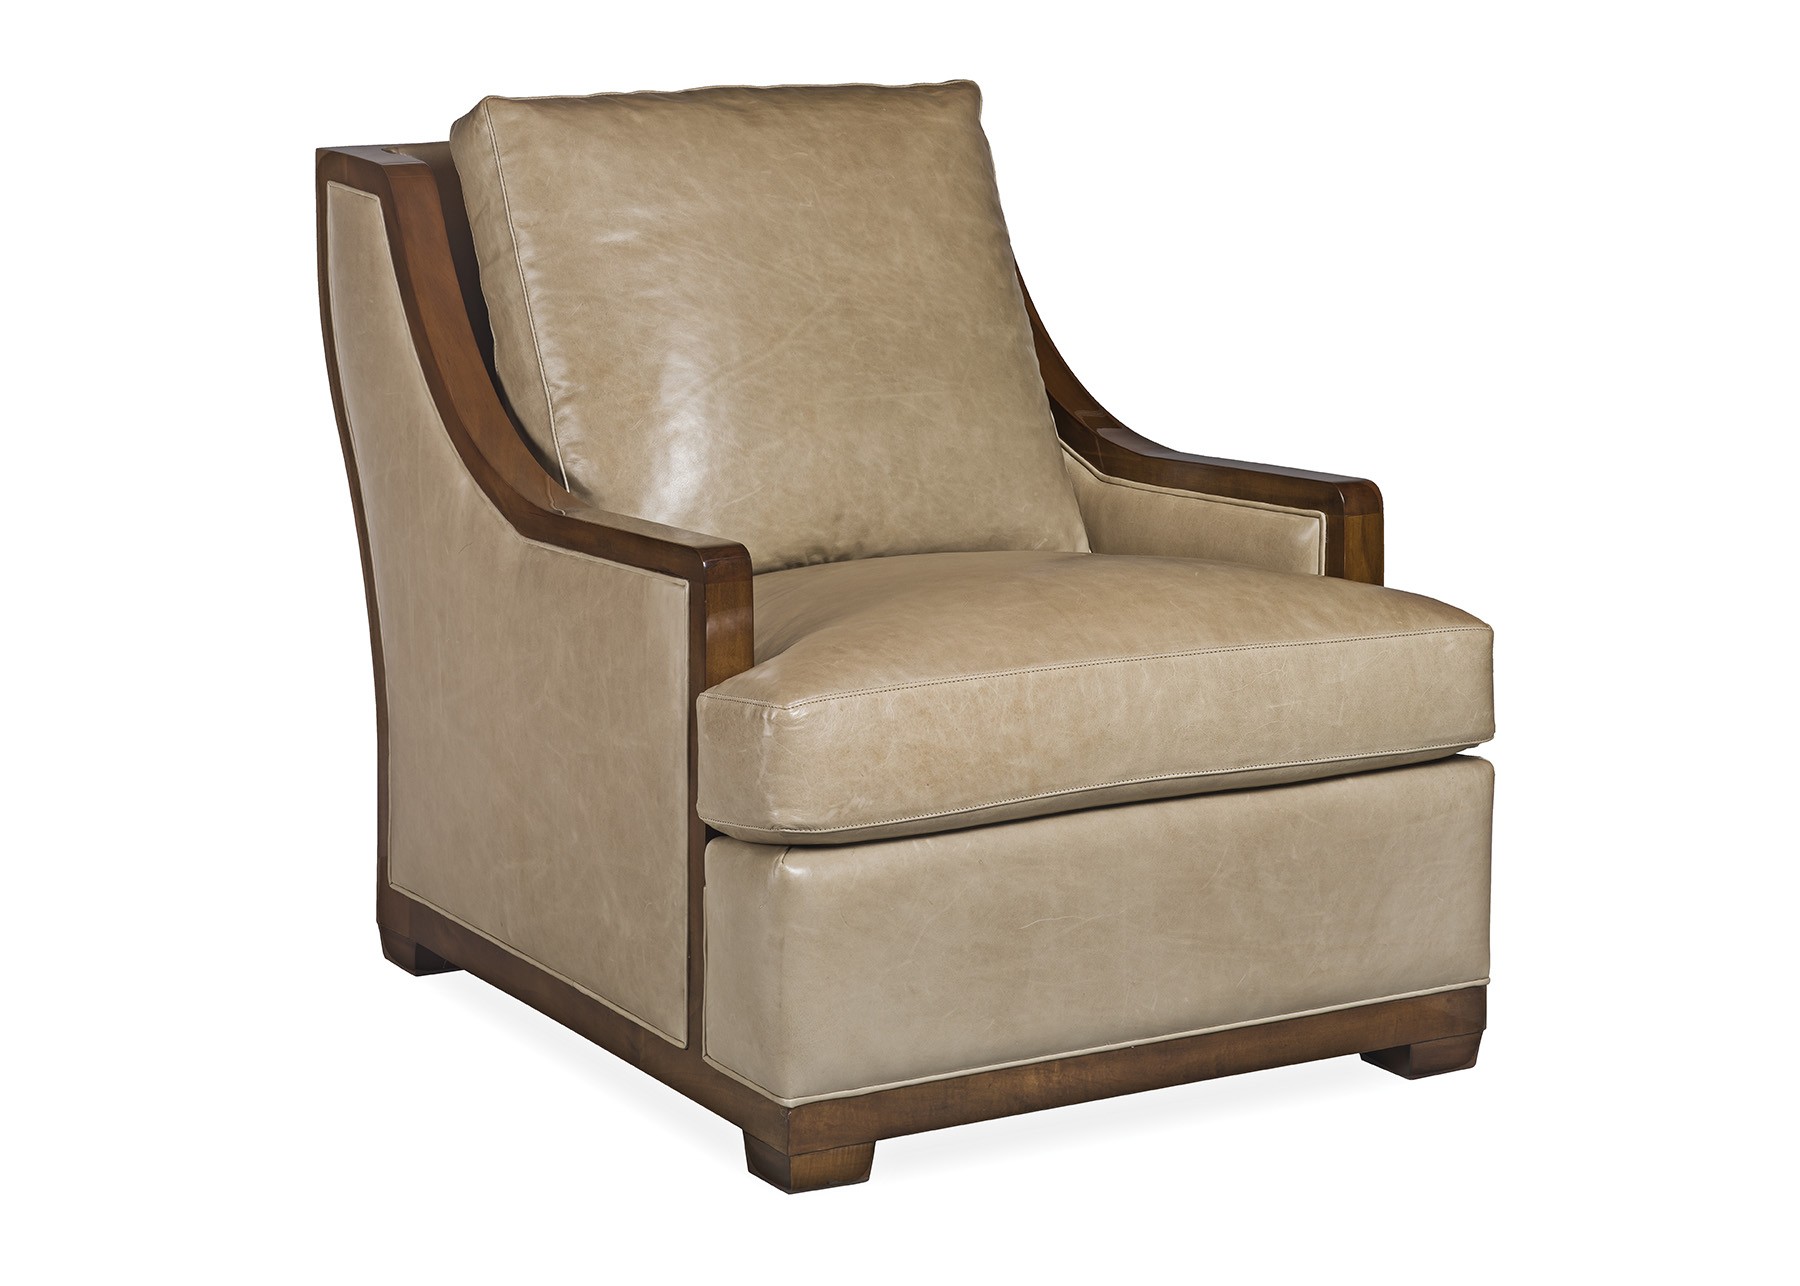 Cabot Wrenn Amity Chair